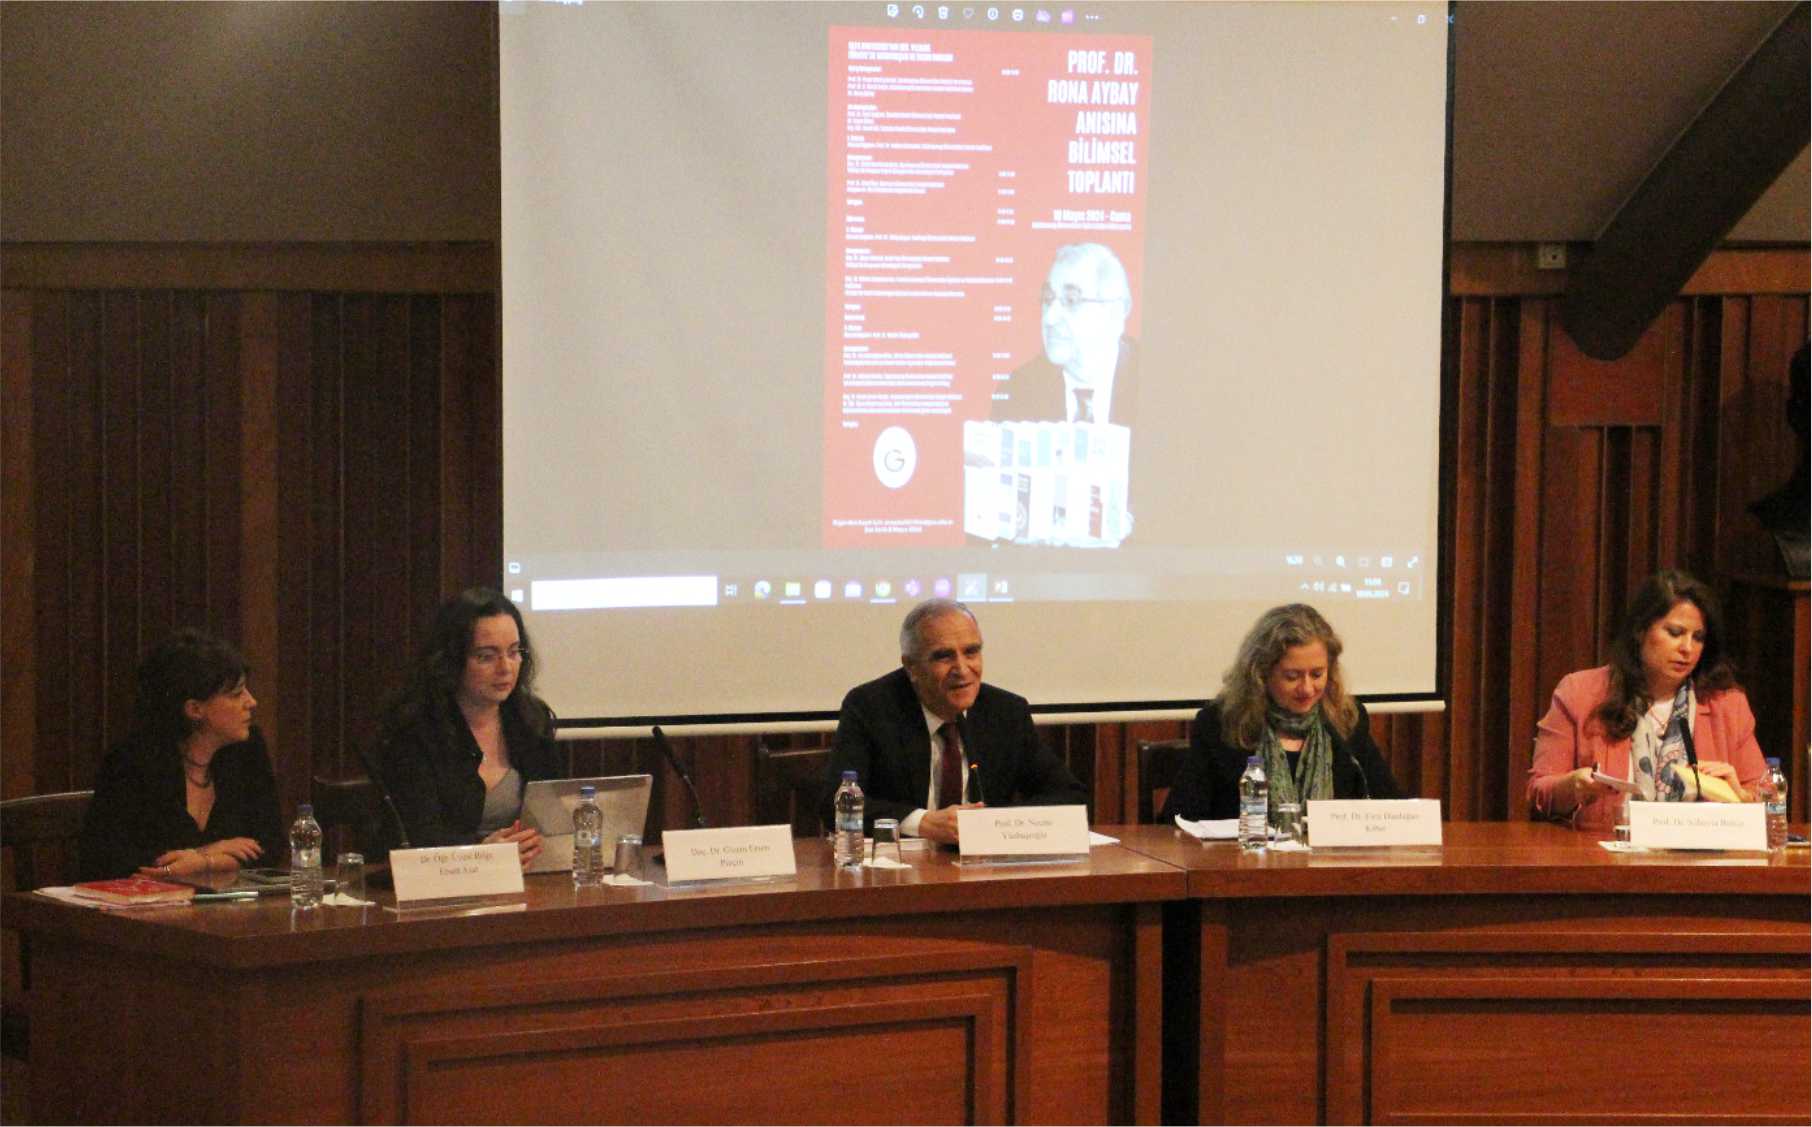 “1924 Anayasası’nın 100. Yılında Türkiye’de Vatandaşlık ve İnsan Hakları” konferansı ile Prof. Dr. Rona Aybay’ı andık duyuru görseli